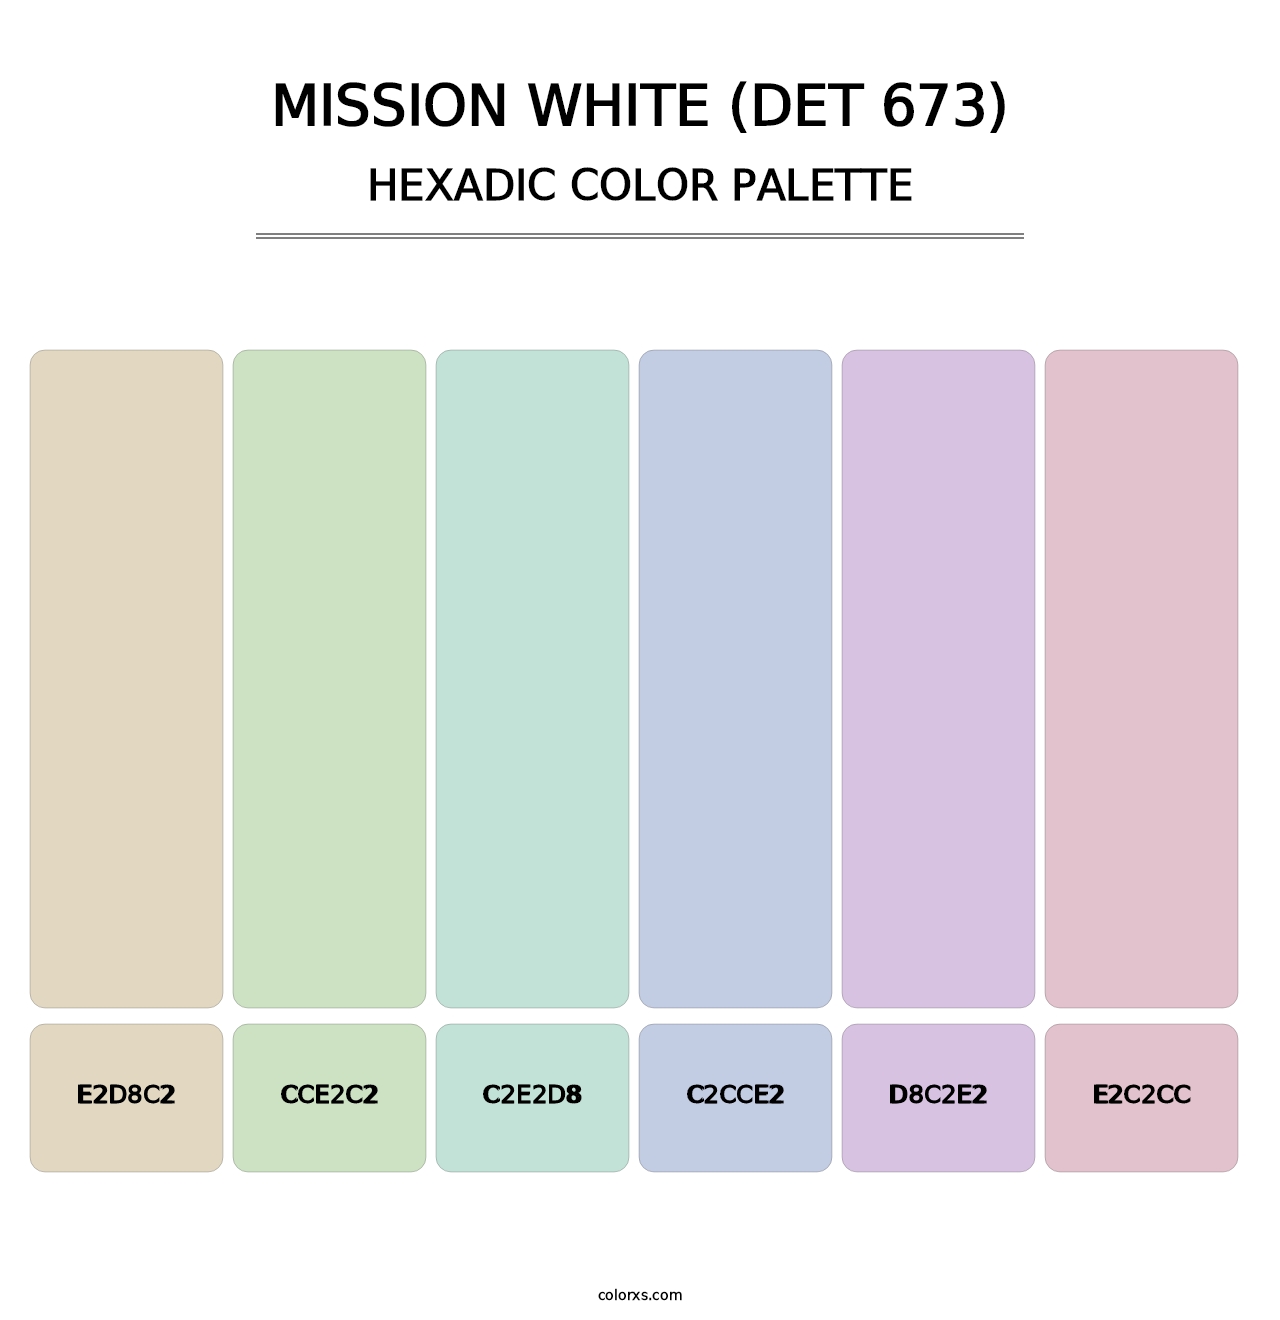 Mission White (DET 673) - Hexadic Color Palette